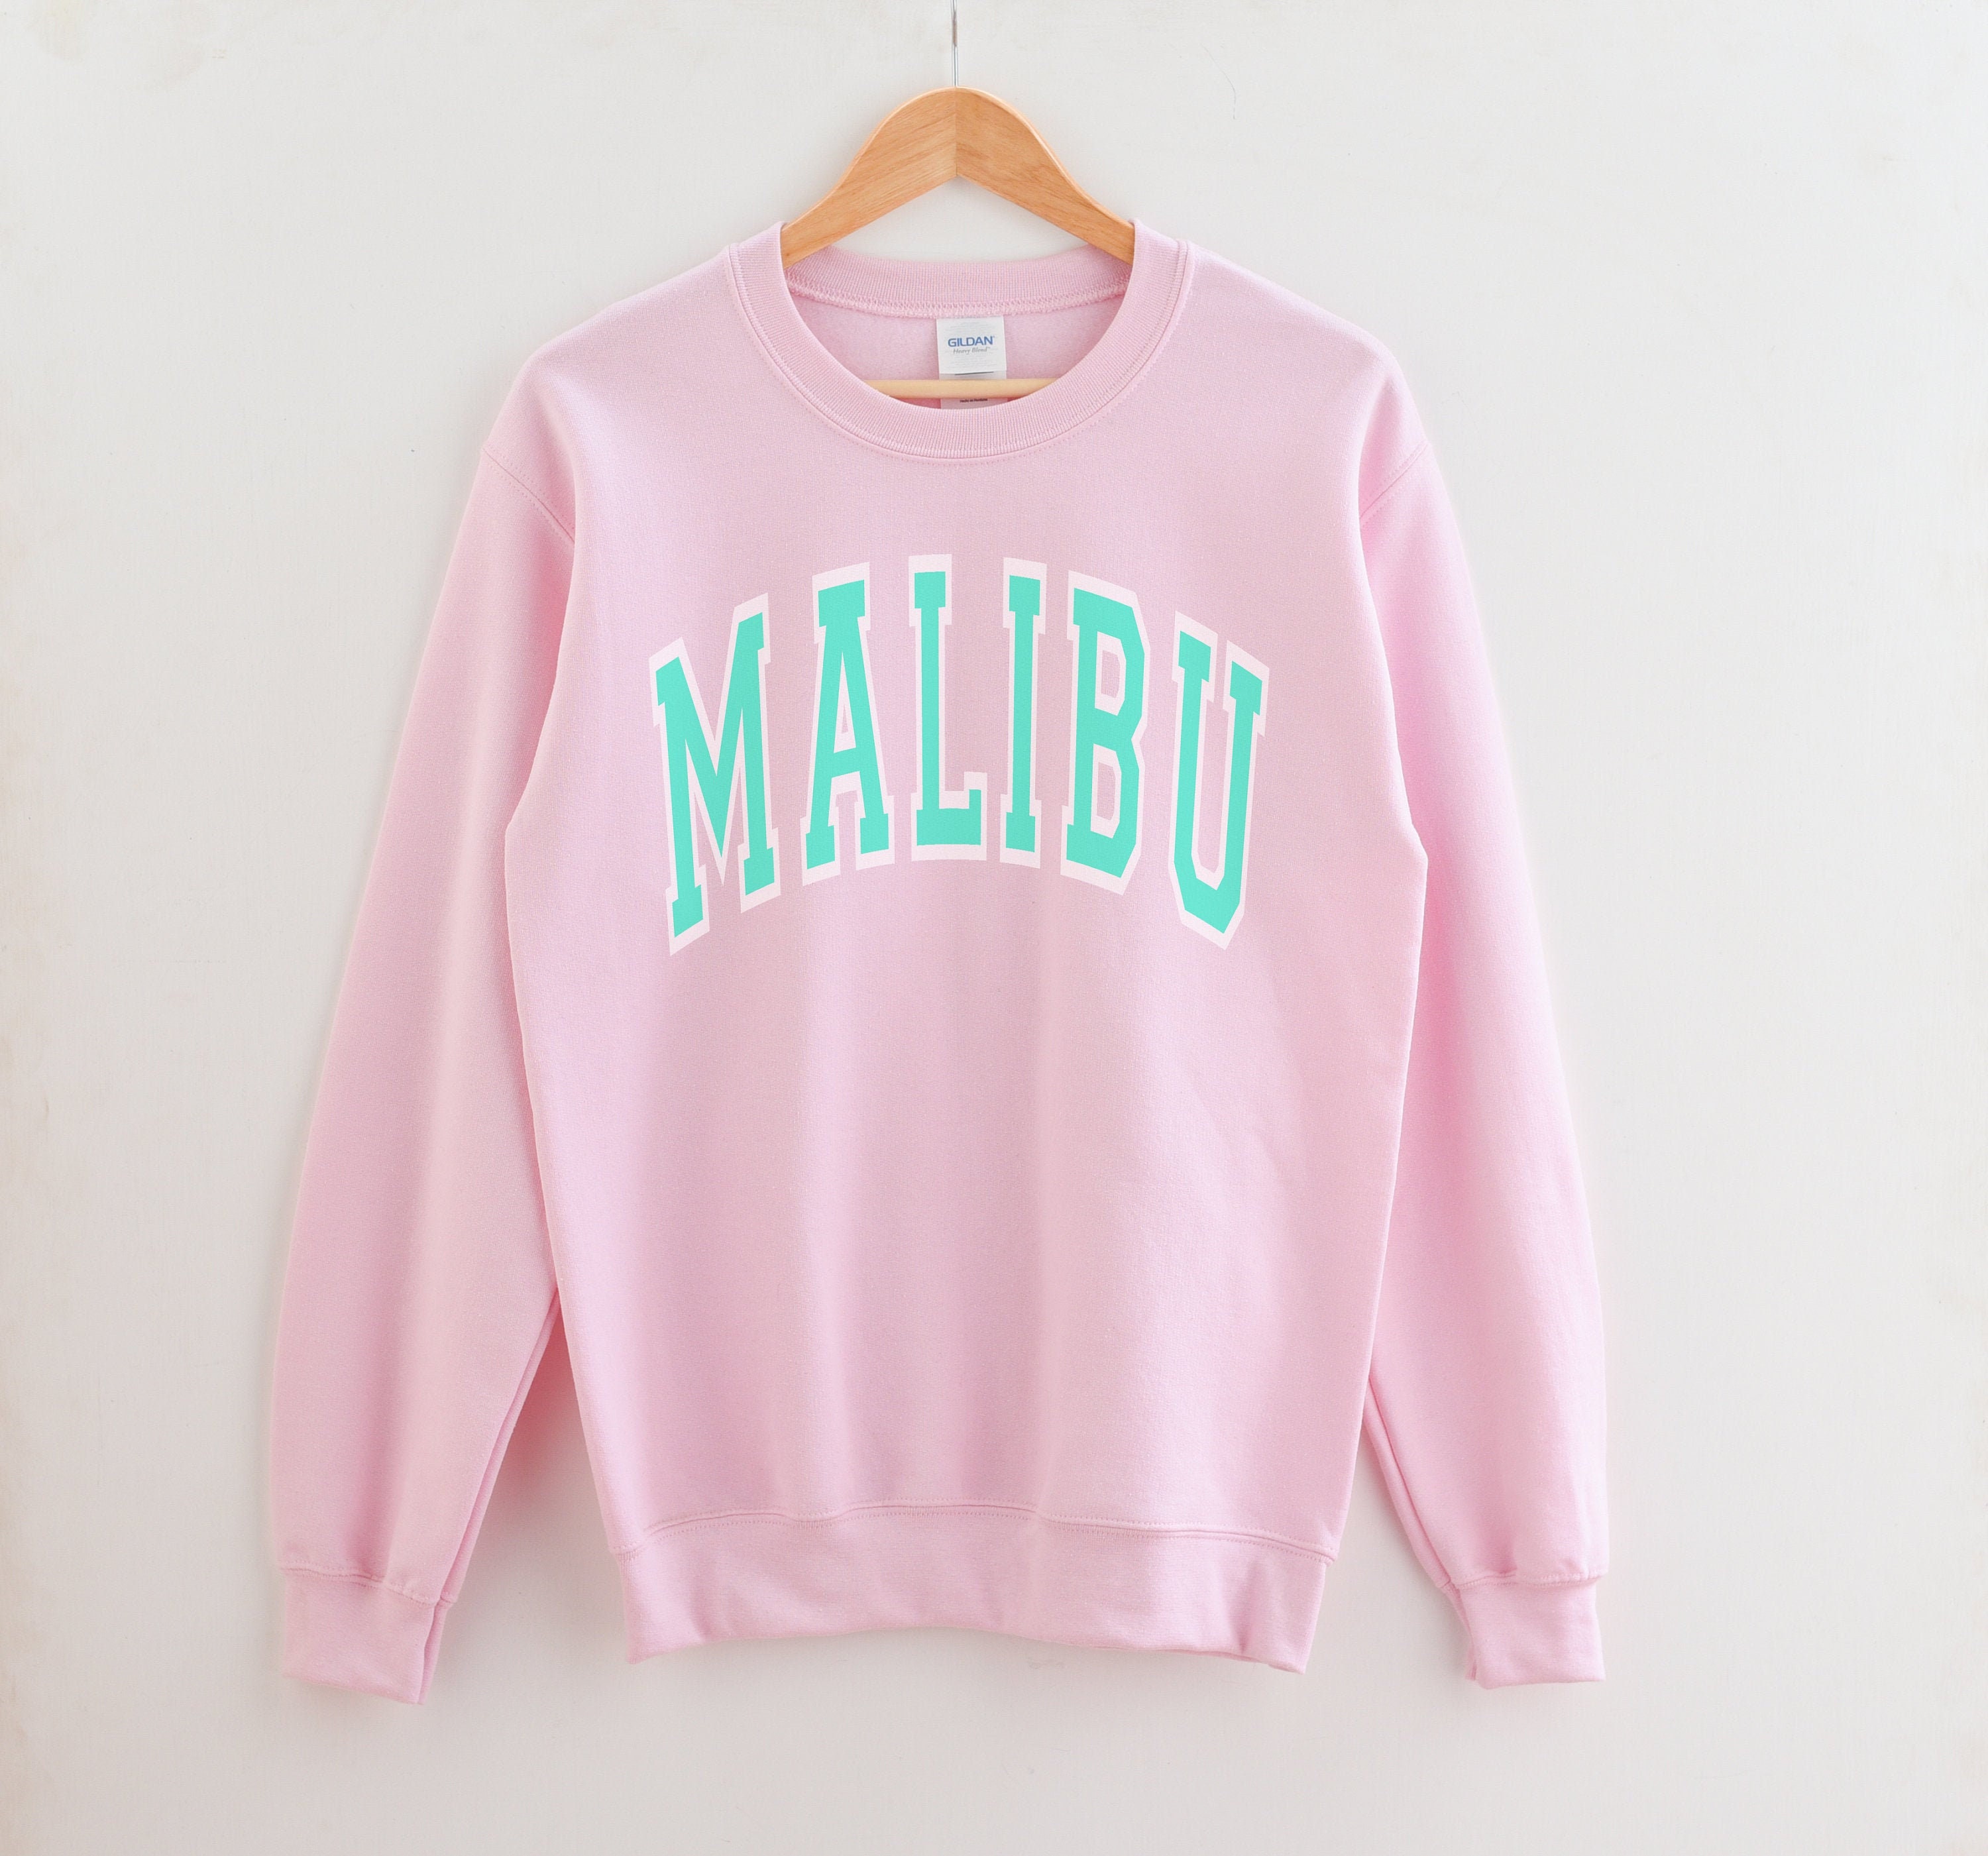 Malibu sweatshirt crewneck Aesthetic Sweatshirt Malibu | Etsy